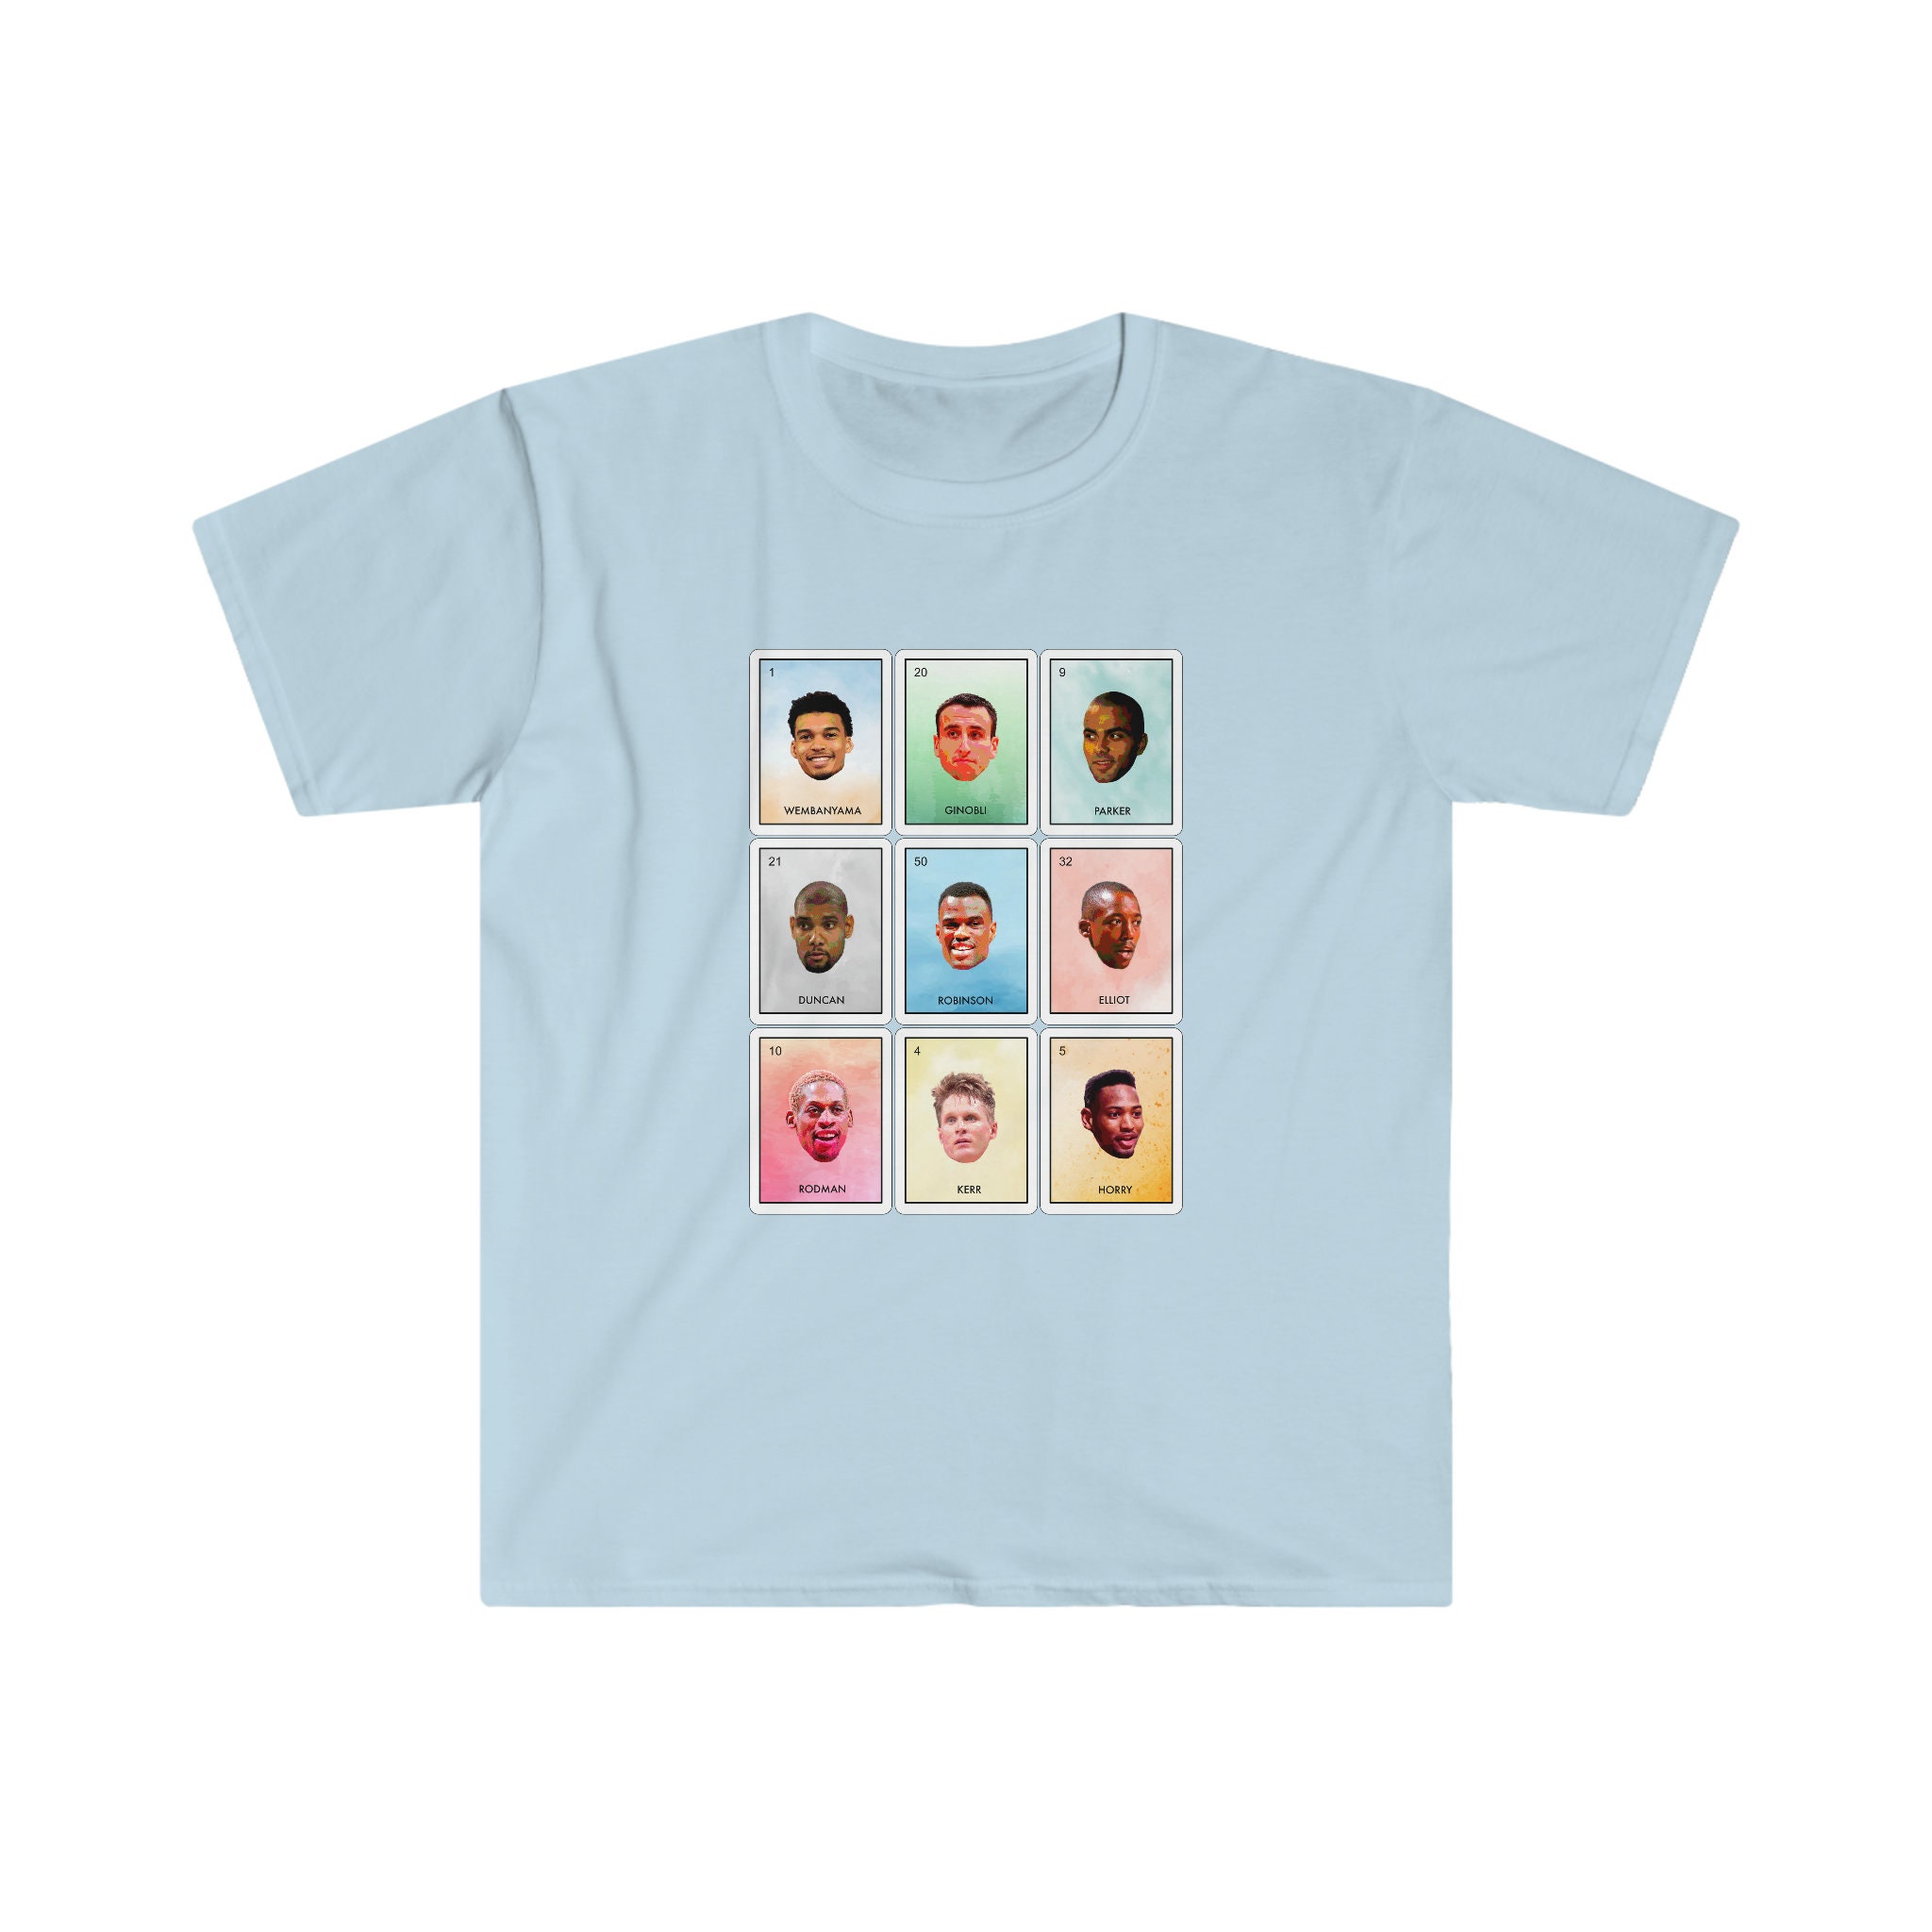 Wembanyama Shirt Spurs Shirt Spurs Legends NBA Shirt - Etsy